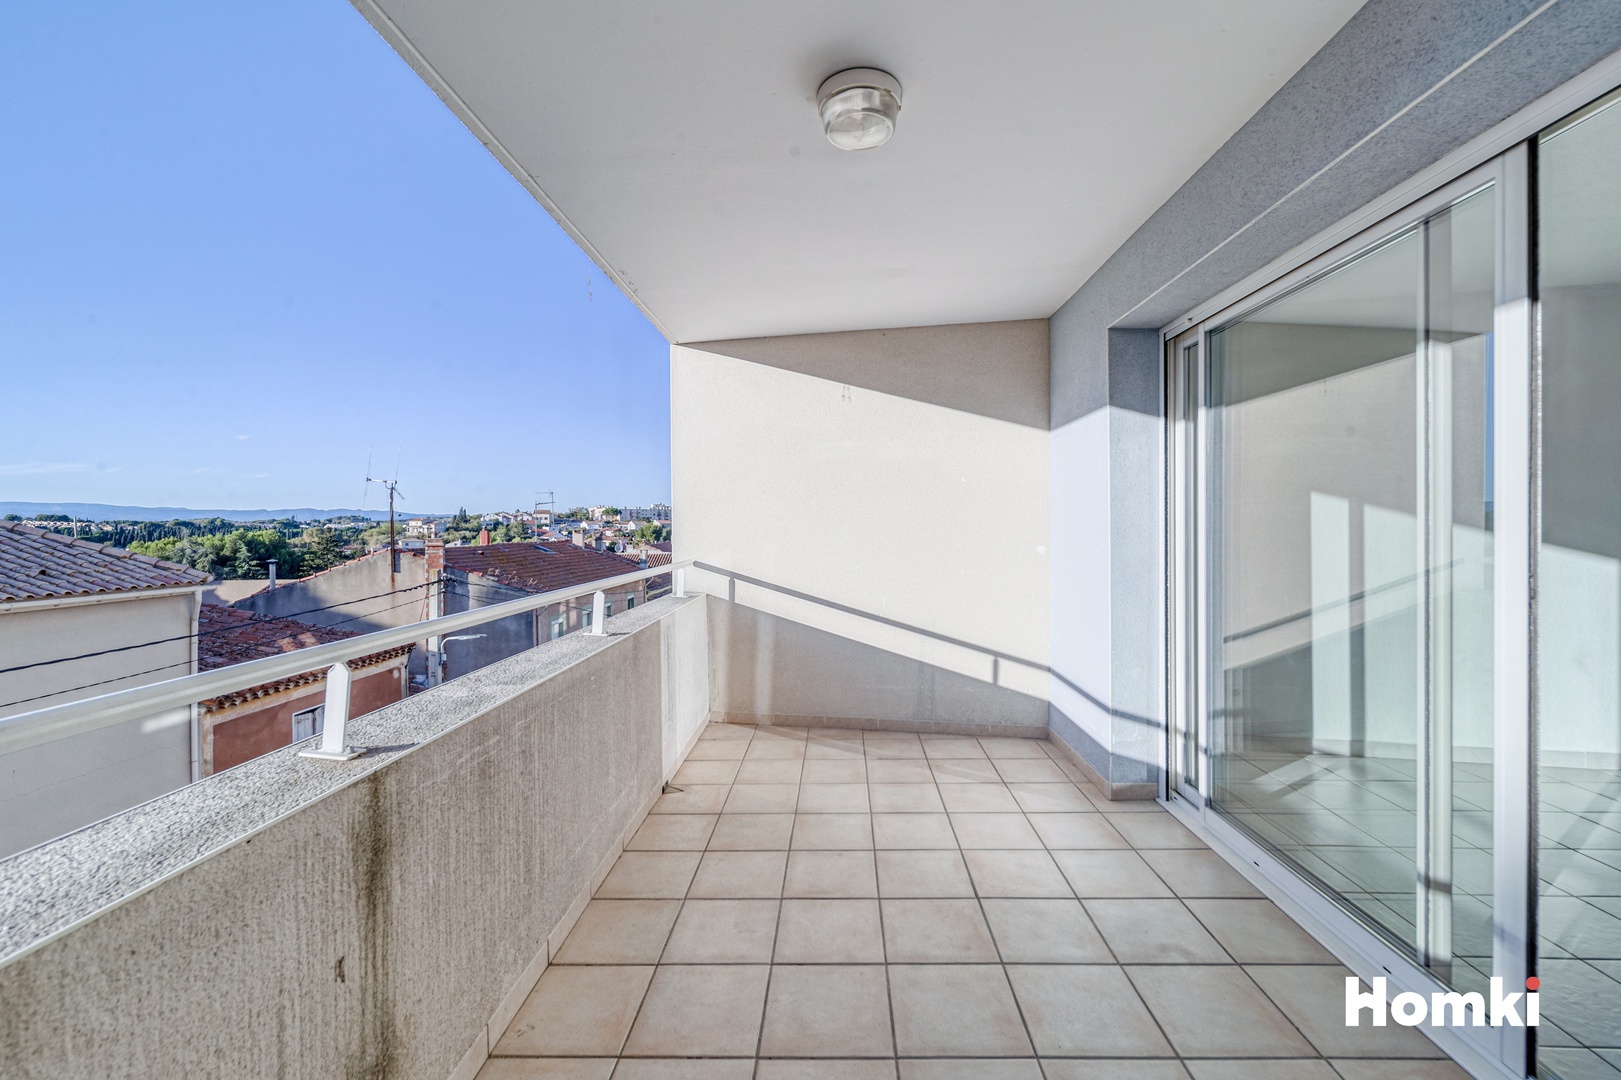 Homki - Vente Appartement  de 75.0 m² à Béziers 34500